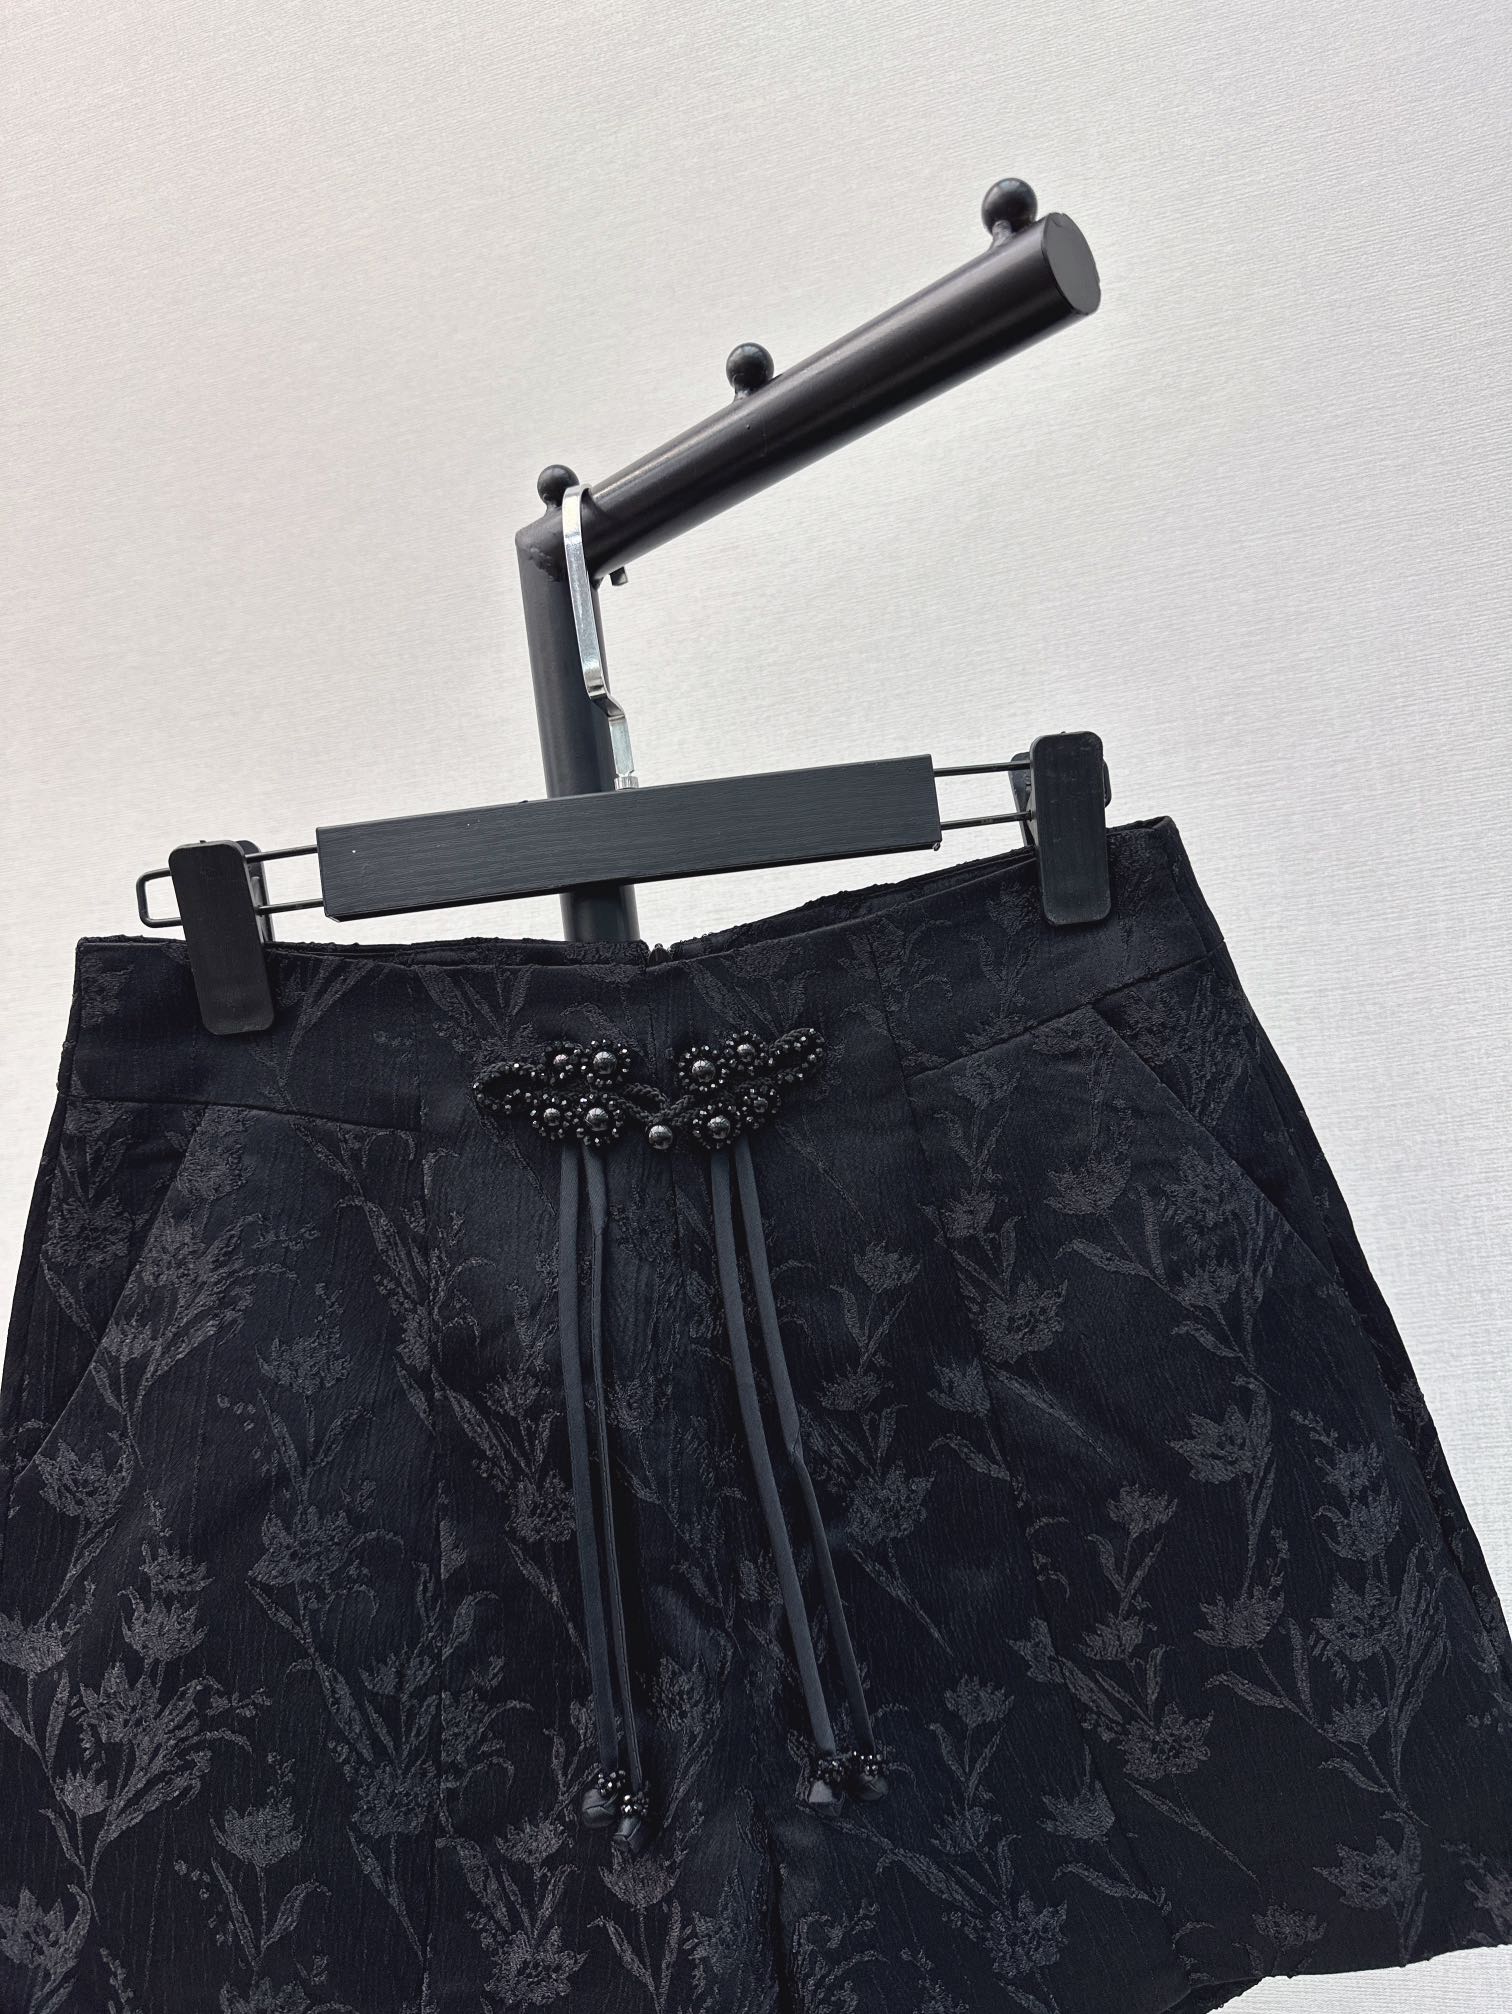 时髦小众设计24Ss春夏最新款新中式提花短裤简洁利落的设计整个就显得很干净又小特别加宽高腰线可以拉长腿部